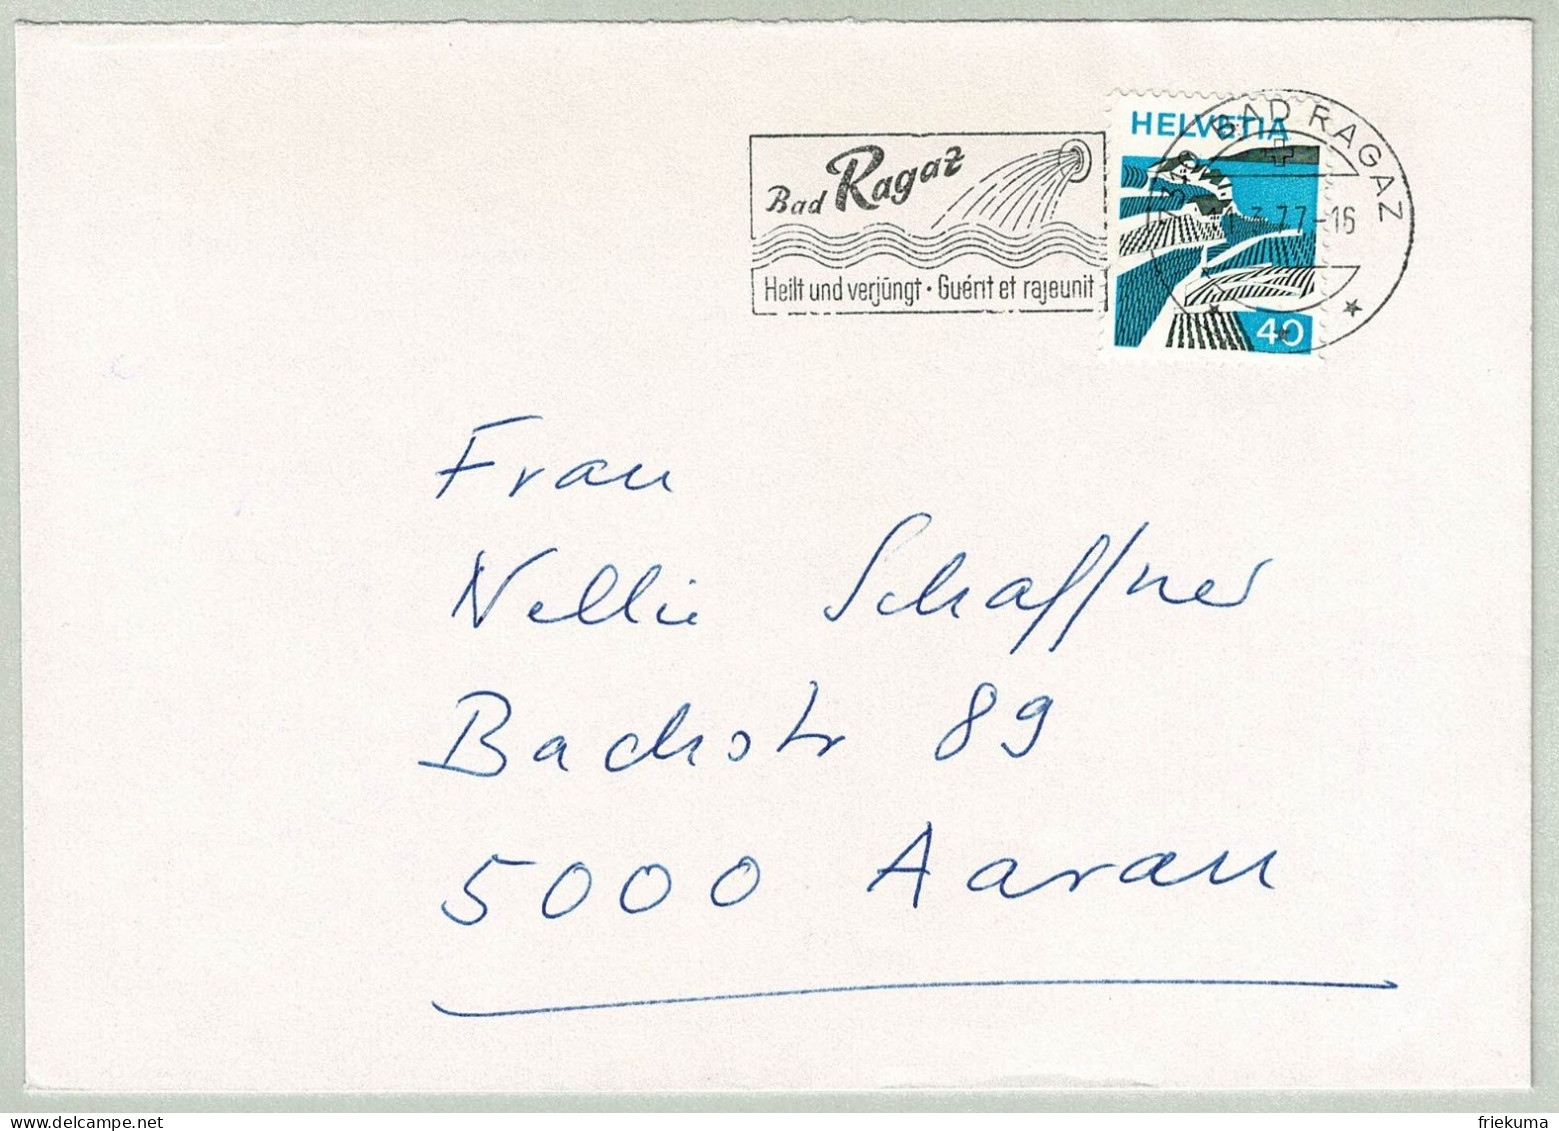 Schweiz / Helvetia 1977, Brief Bad Ragaz - Aarau, Heilt Und Verjüngt / Guént Et Rajeunit, Quelle - Hydrotherapy